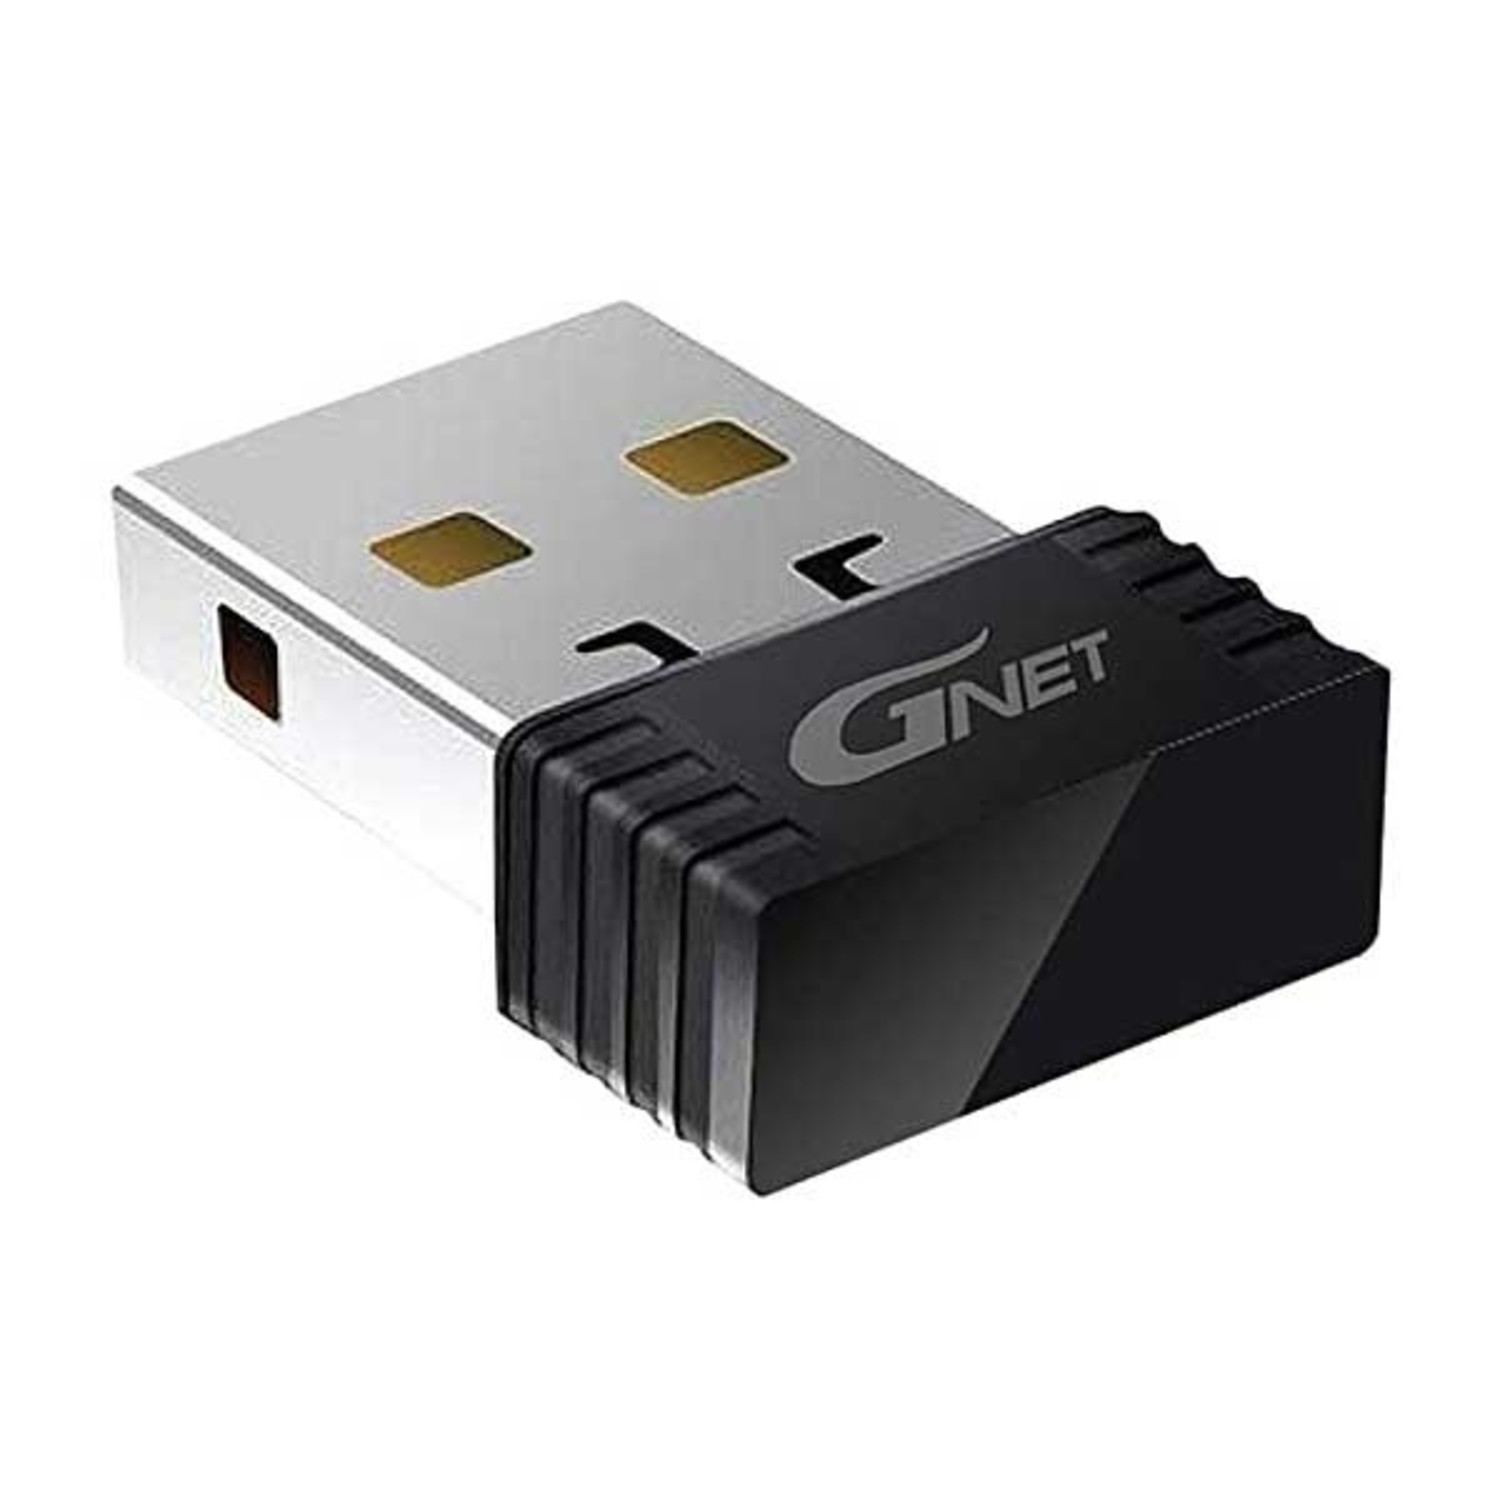 Perforeren groet heet Gnet USB Wifi adapter - Dashcamdeal | Europe's dashcam store